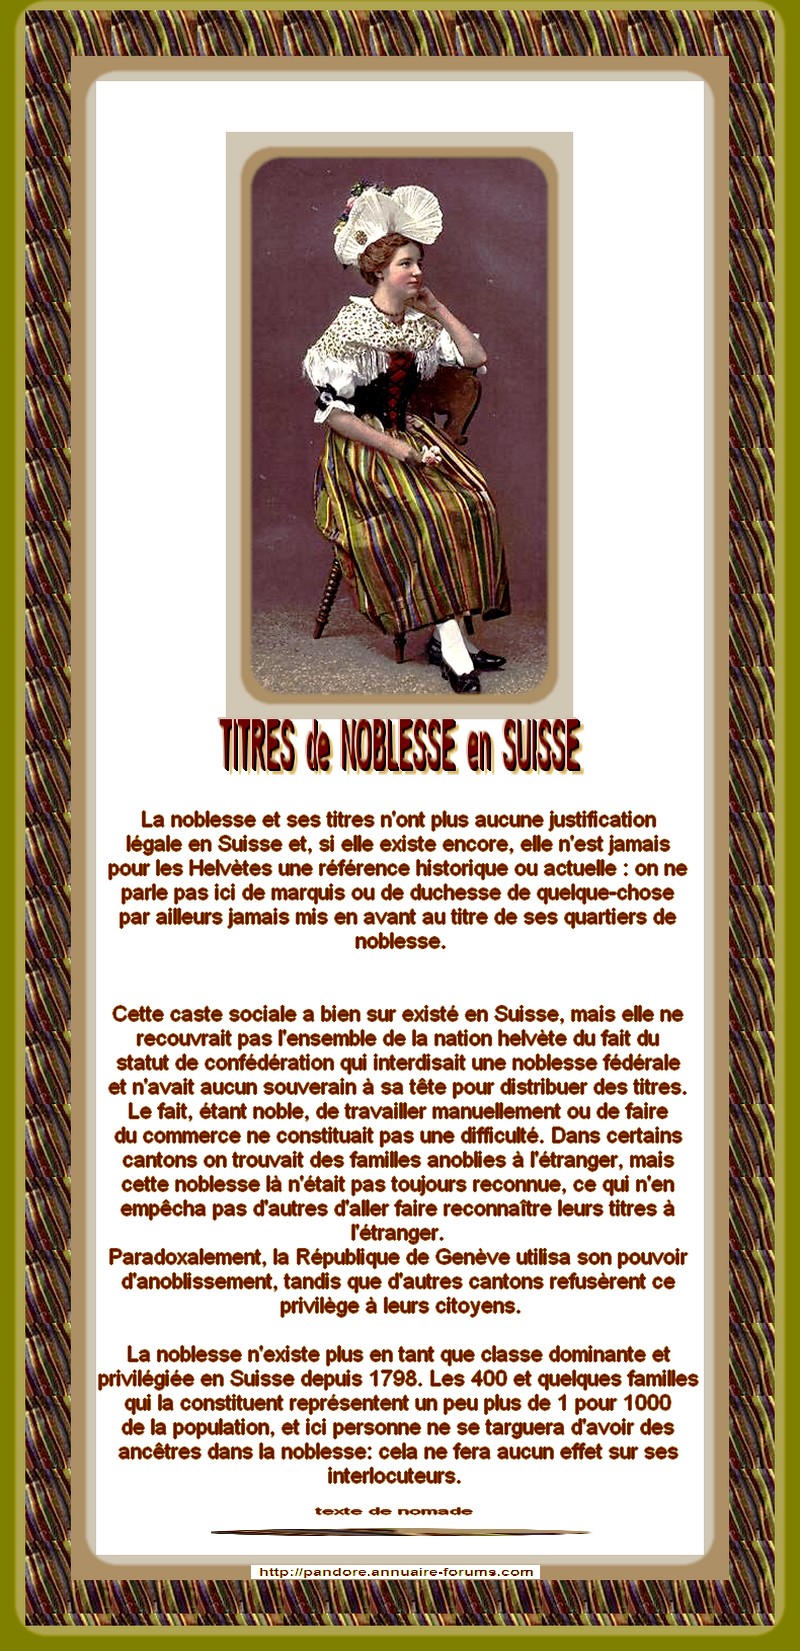 SUISSE - TITRES DE NOBLESSE N'ONT AUCUNE JUSTIFICATION LEGALE  13011011464415723410748976